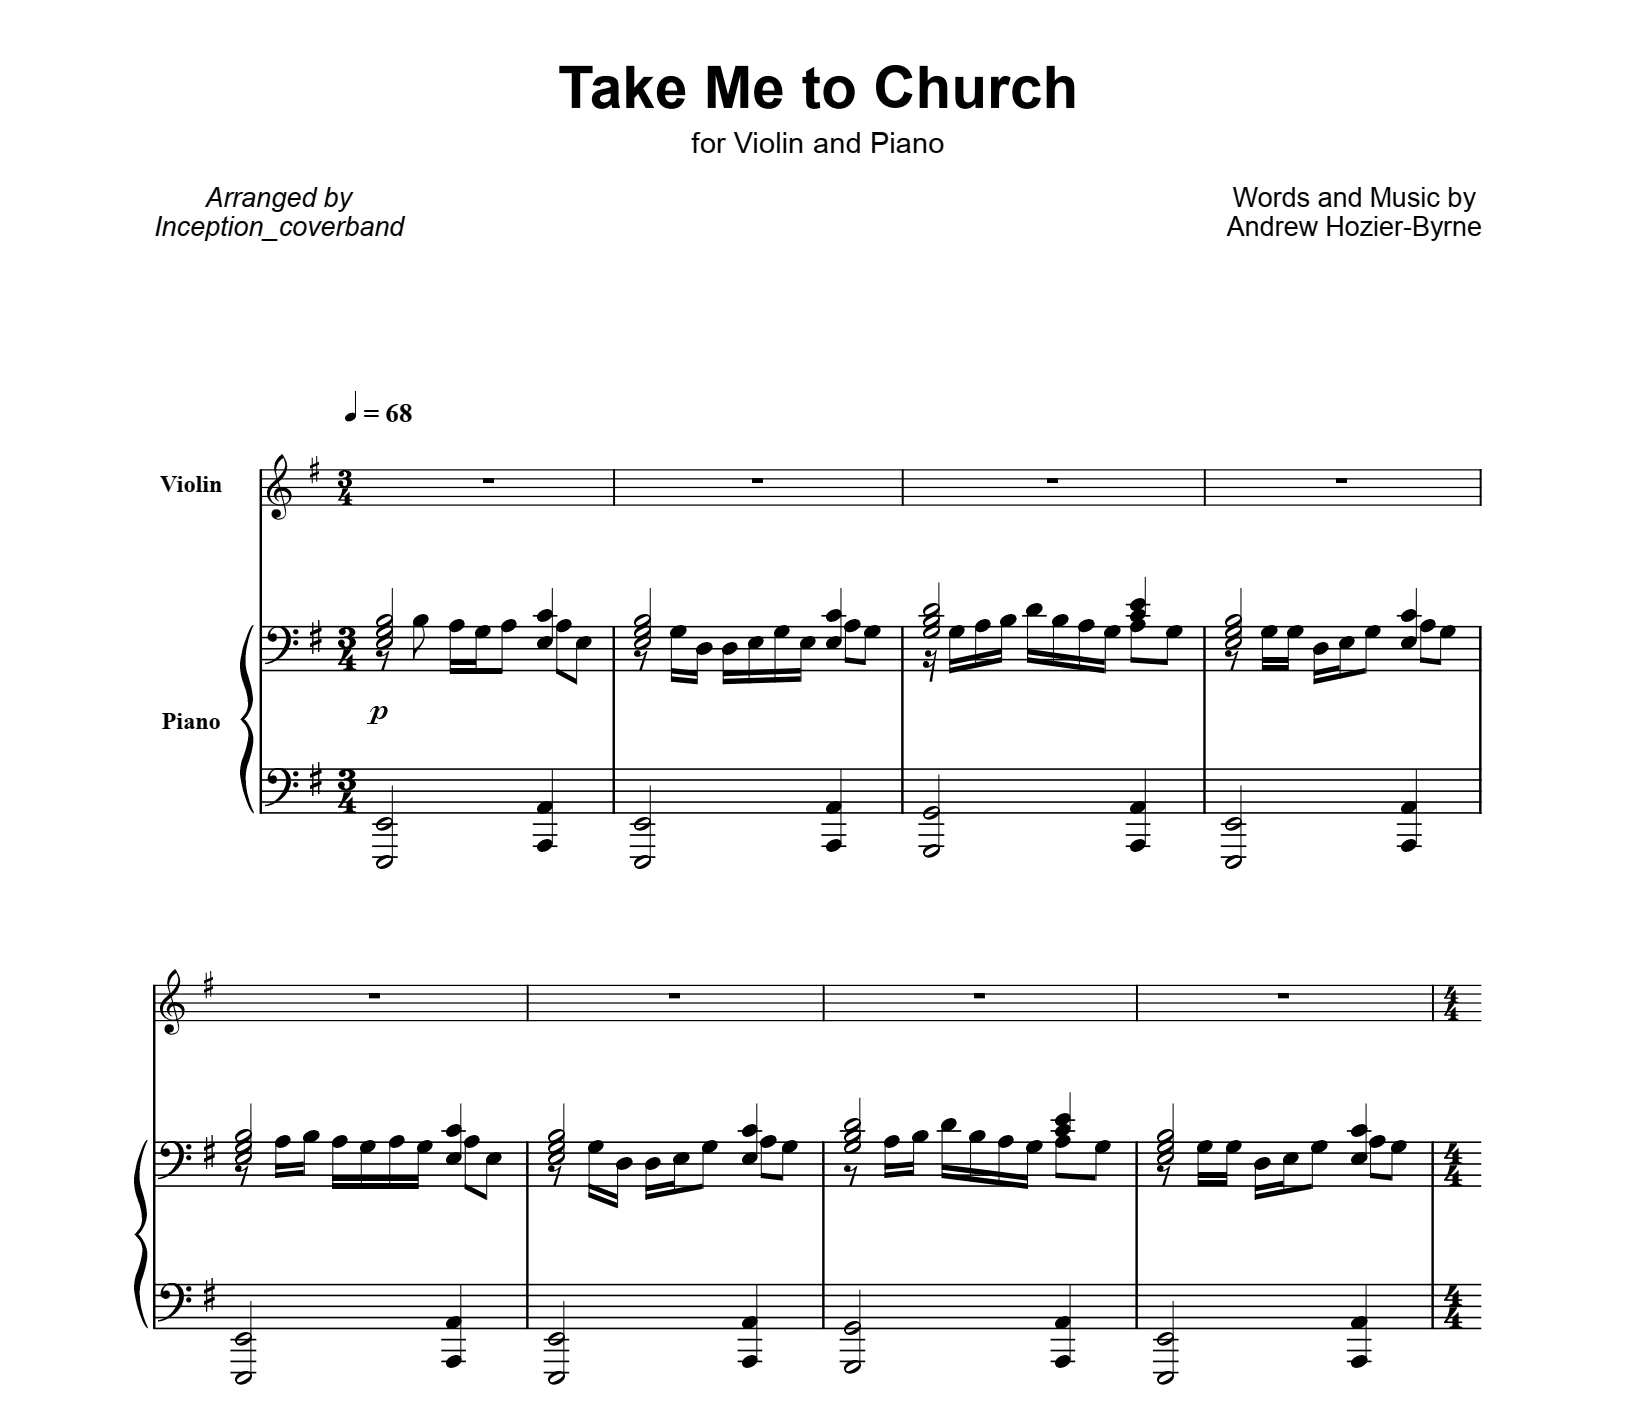 Take me to church lyrics